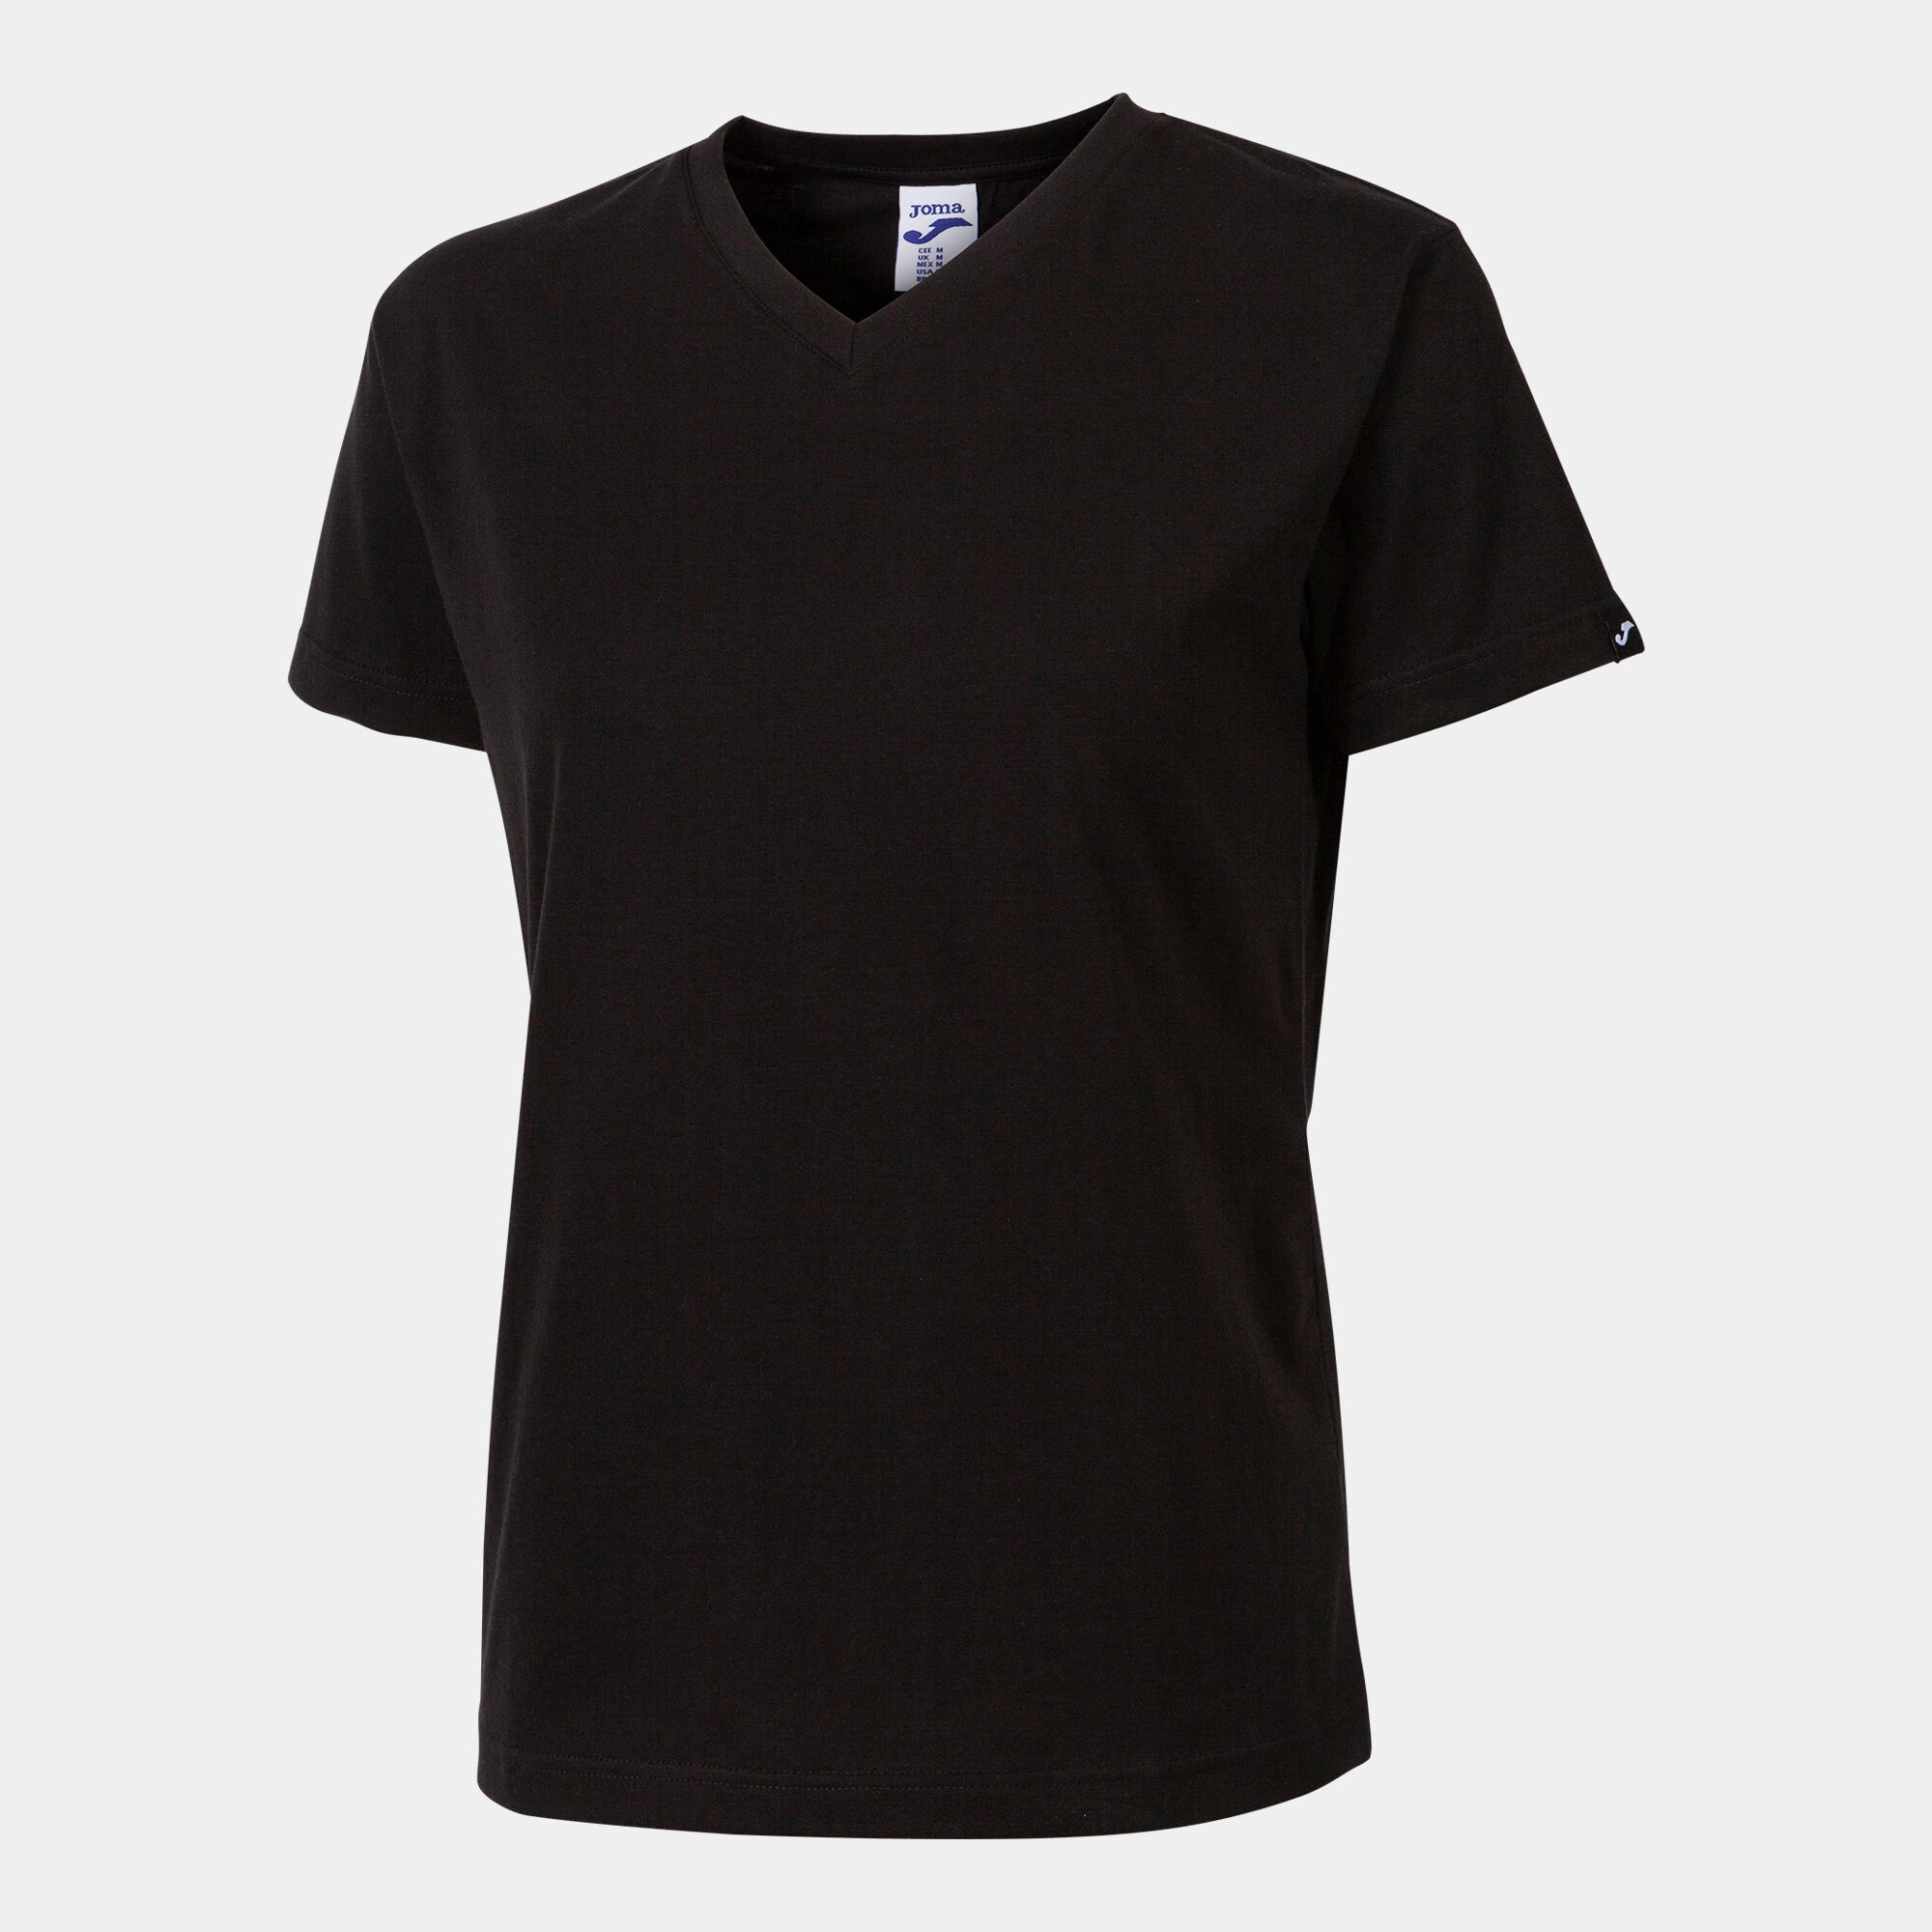 Camiseta manga corta mujer Versalles negro